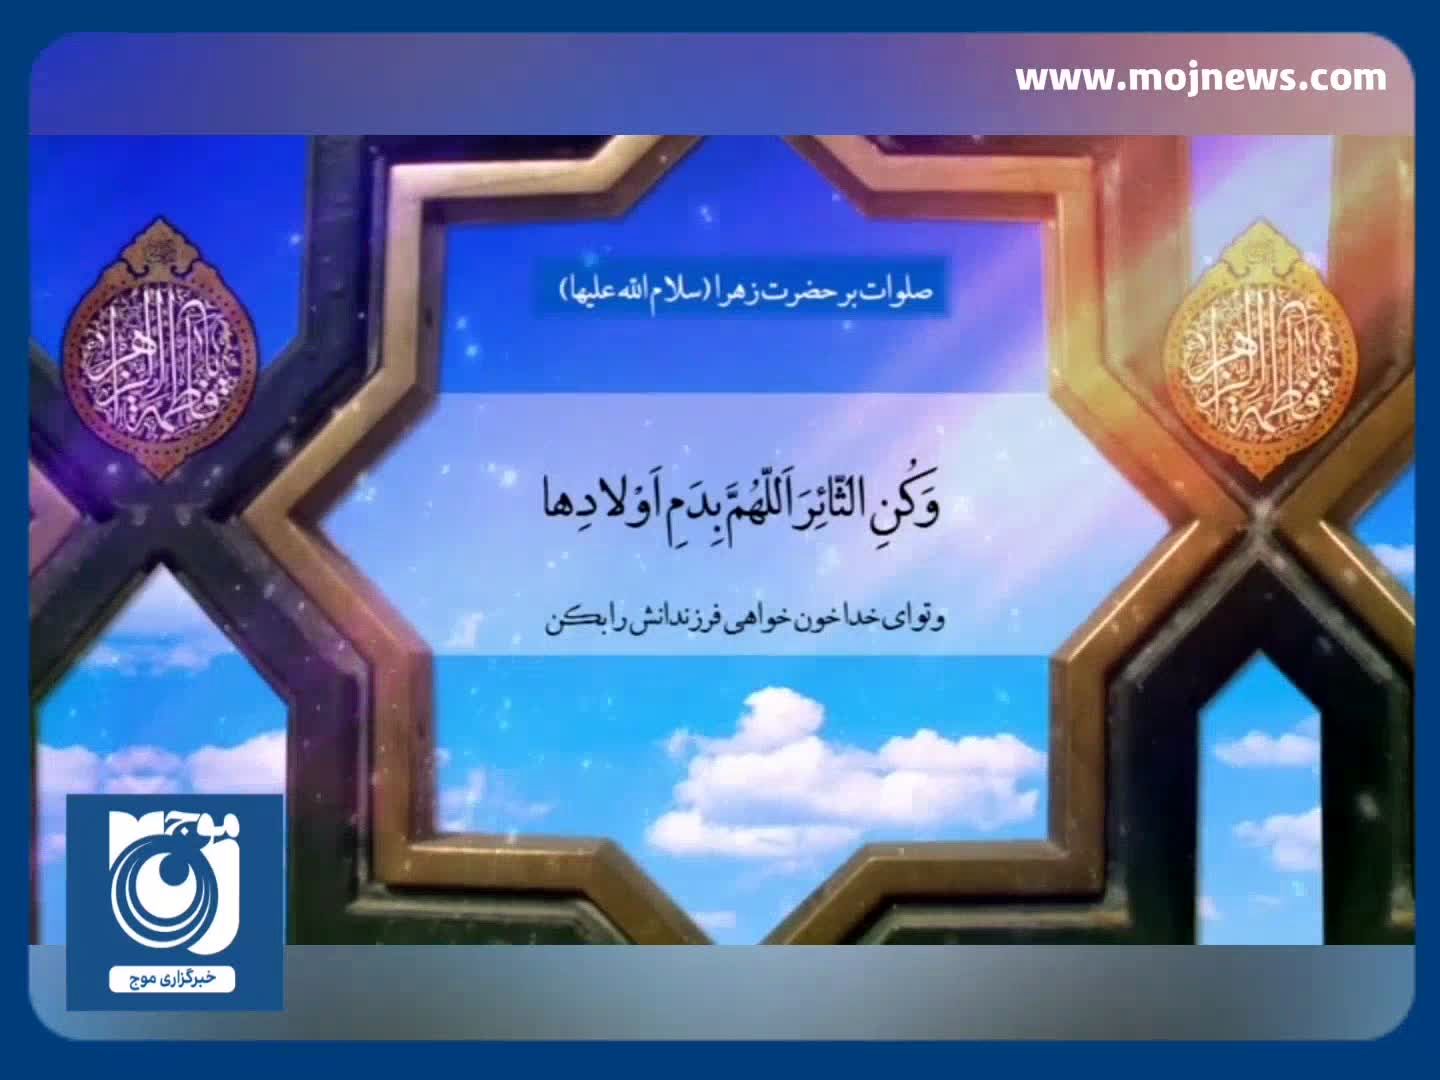 صلوات بر حضرت زهرا سلام الله علیها با نوای حاج رضا بکایی + فیلم